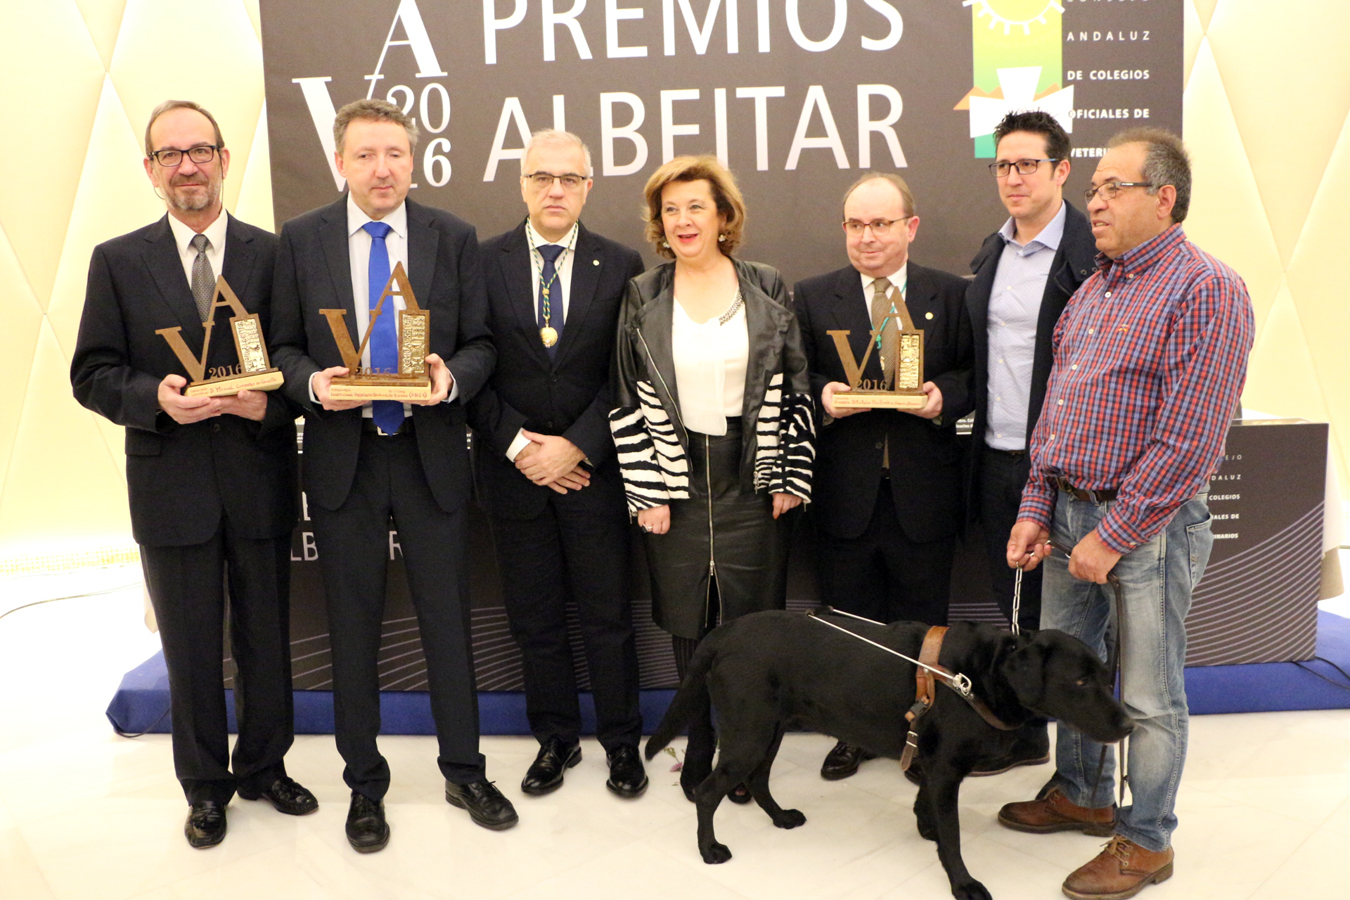 La Veterinaria andaluza entrega los premios Albéitar